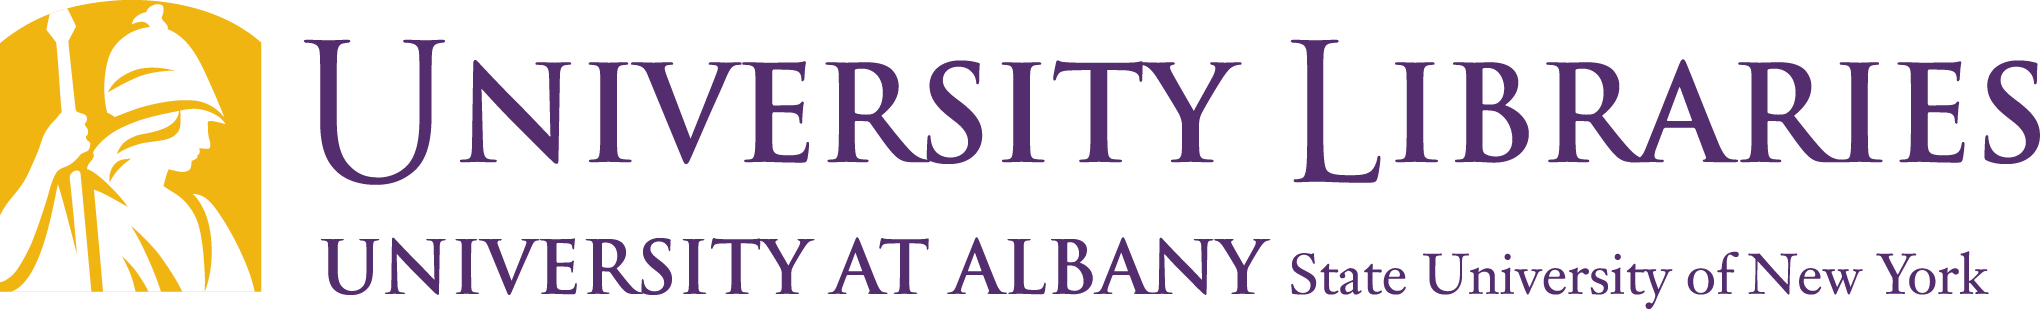 University at Albany Libraries logo